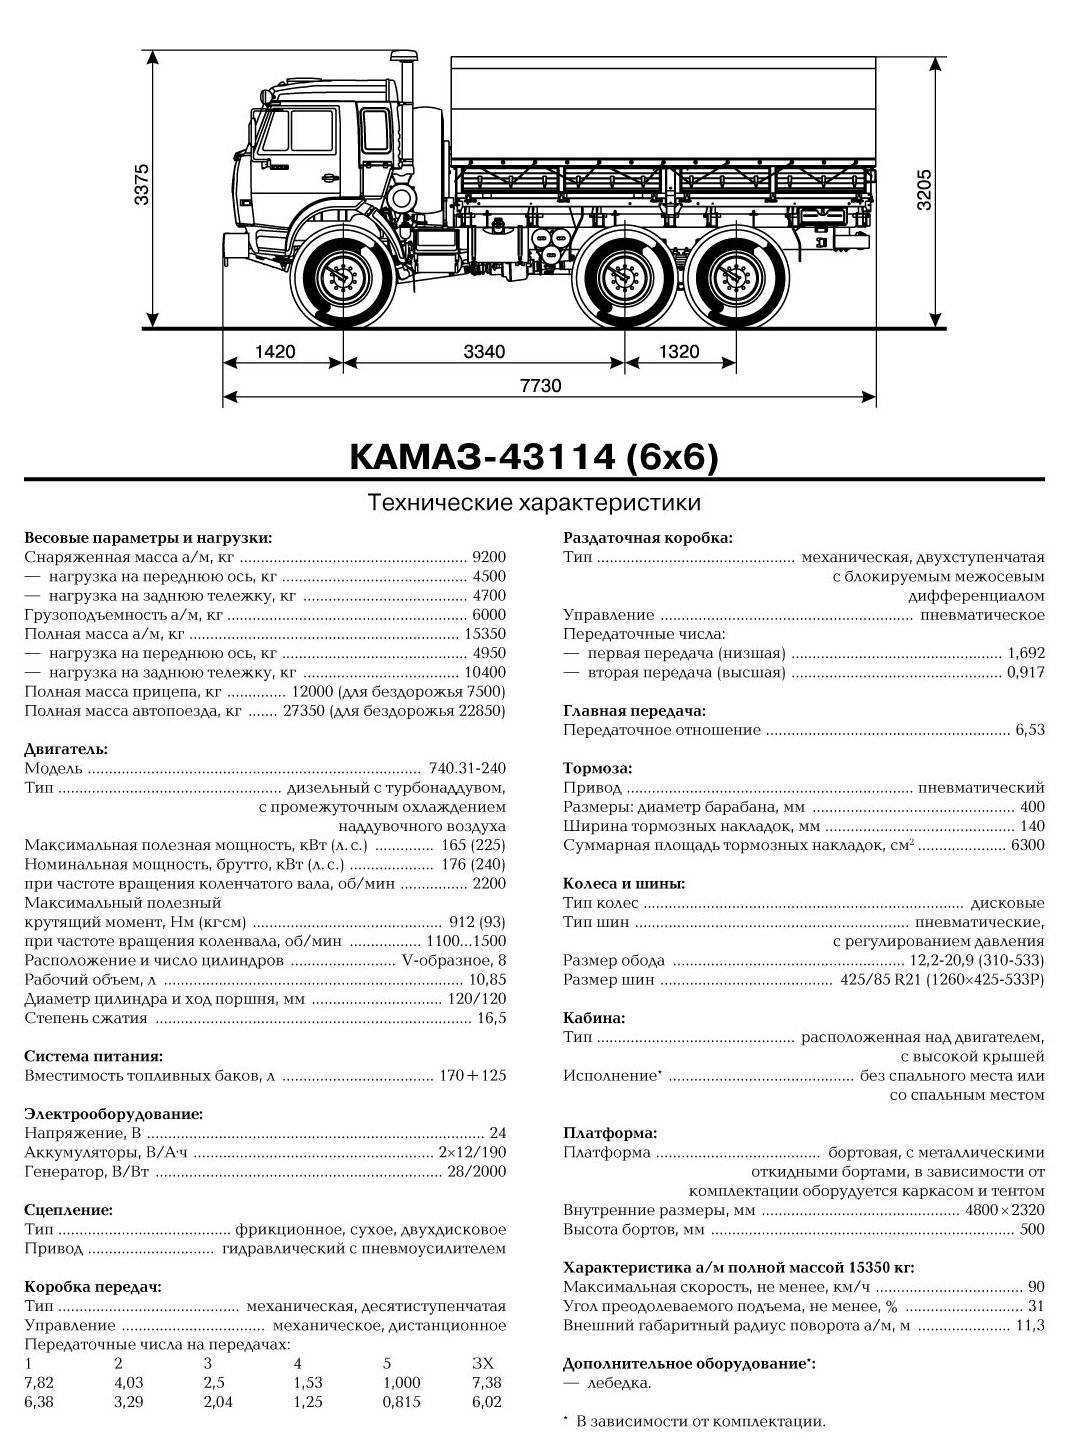 Автосамосвал камаз 65802-153001-87(s5) (kamaz k4141)